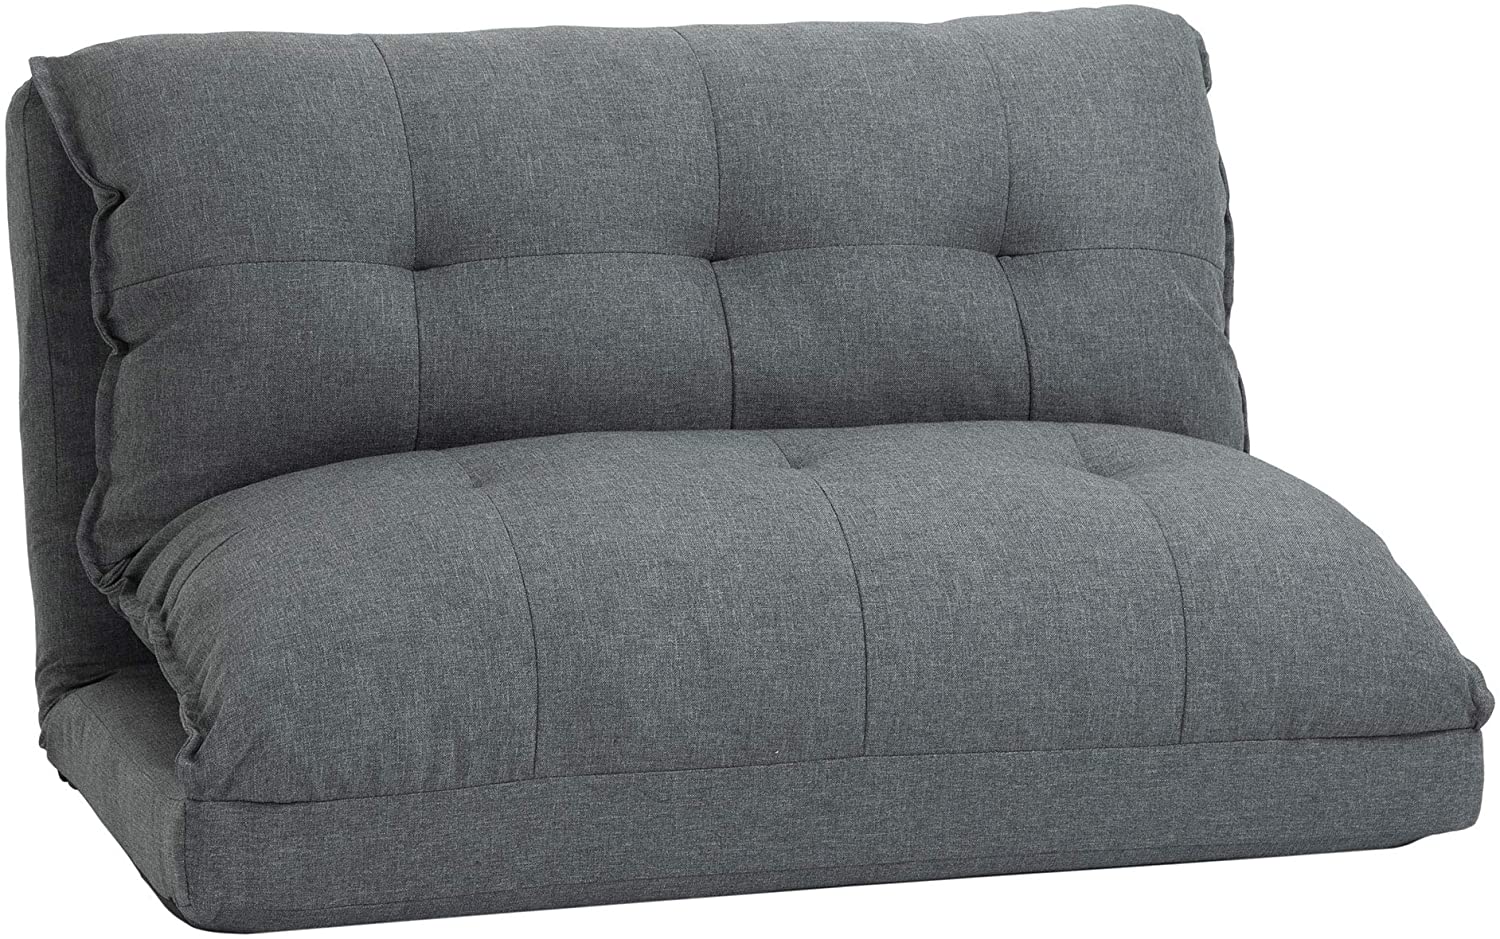 HOMCOM Floor Chair Foldable Single Sofa Bed